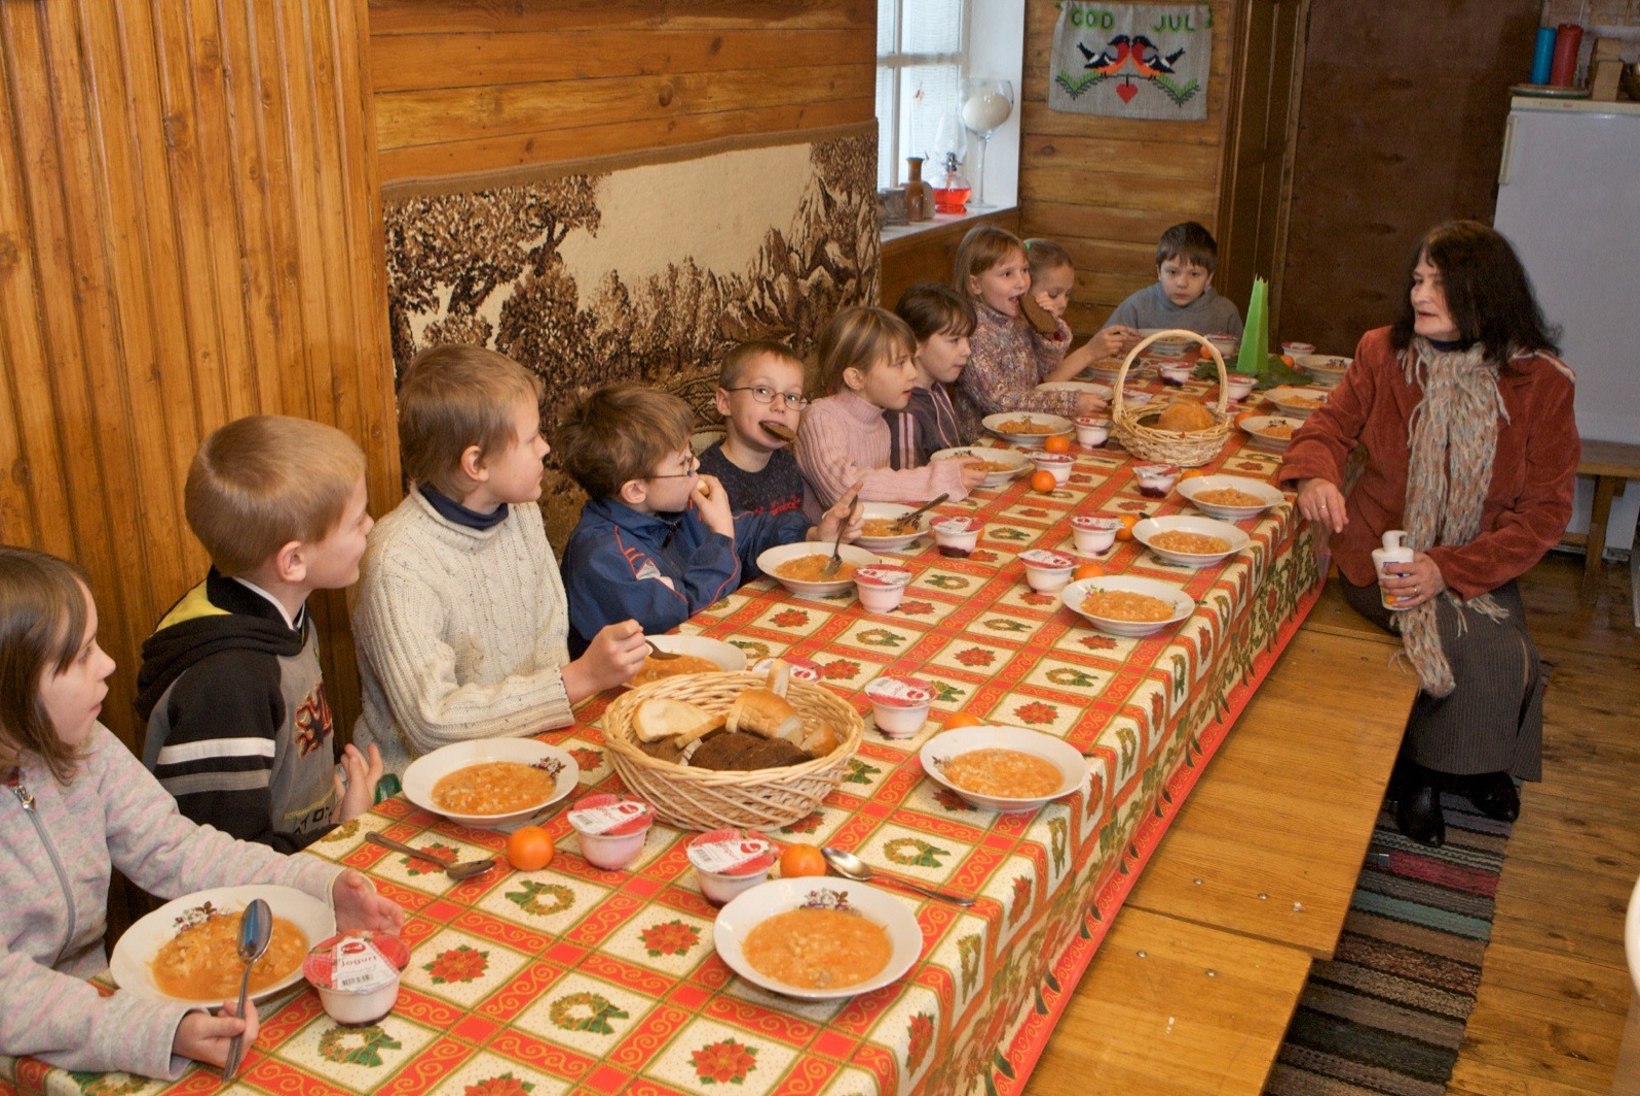 ENAM MITTE: teised lapsed Tallinna lasteaedades tasuta toitu ei saa